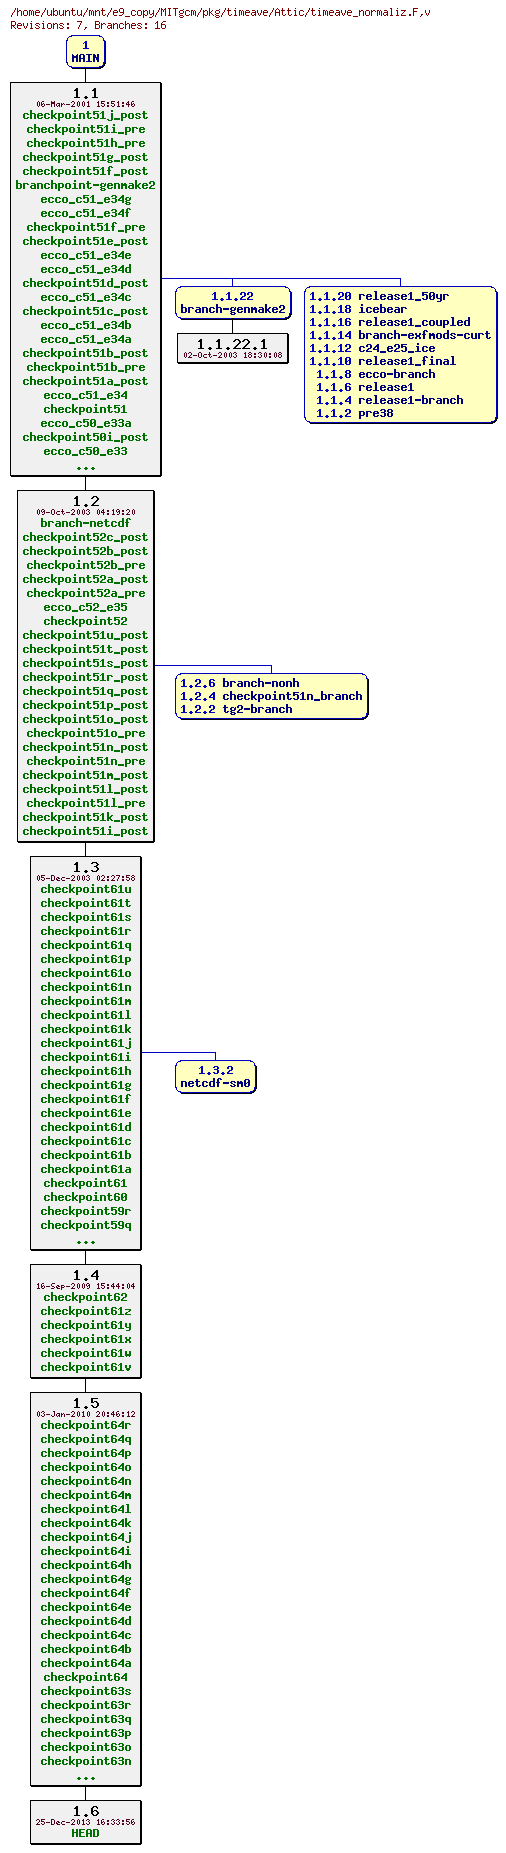 Revisions of MITgcm/pkg/timeave/timeave_normaliz.F